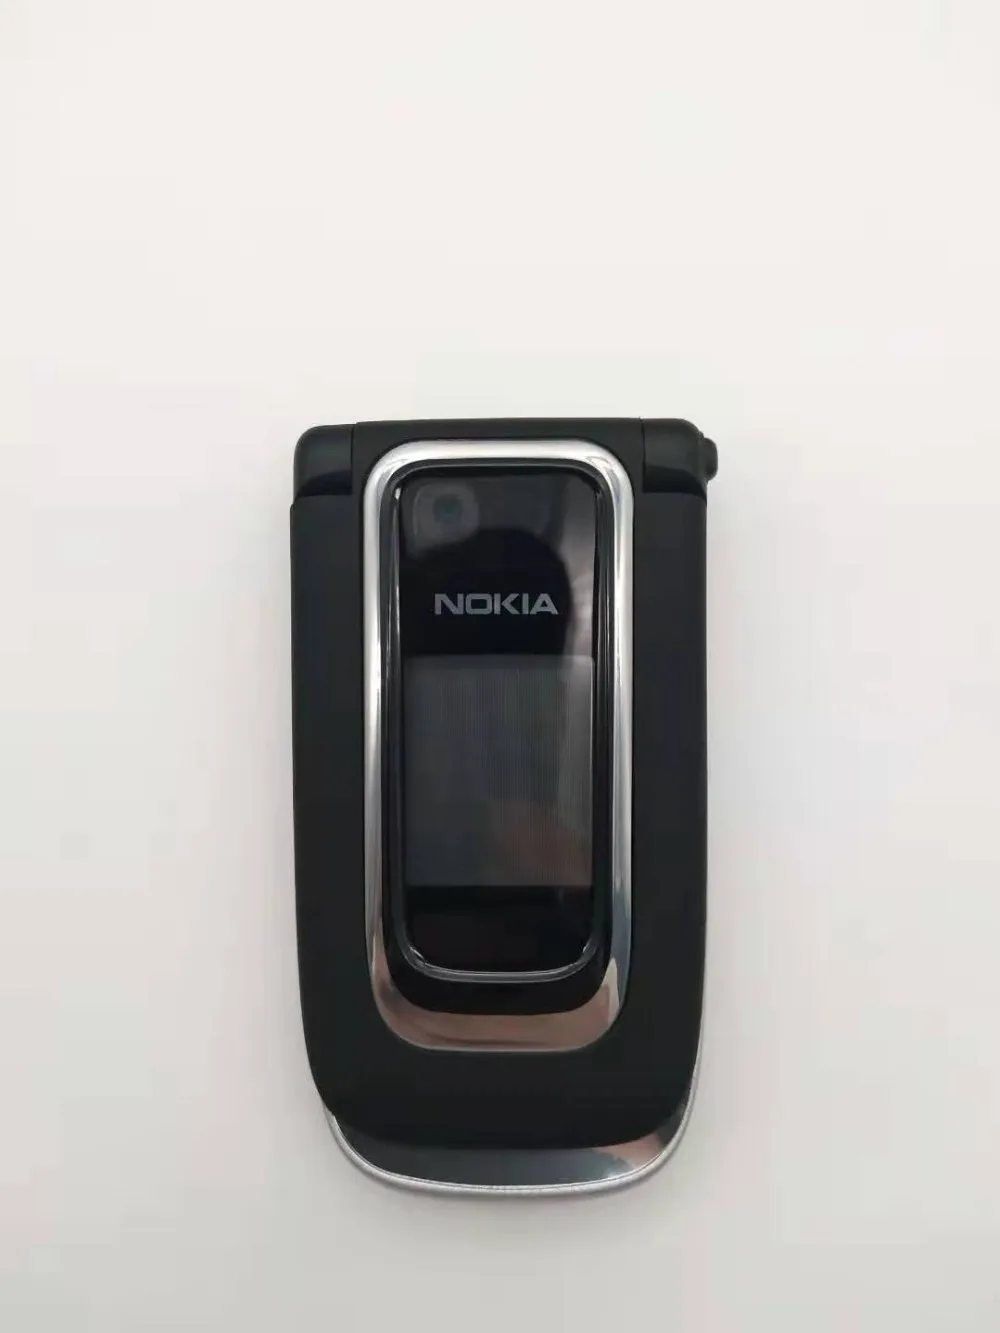 Отремонтированный разблокированный 6131 Мобильный телефон Nokia 6131 дешевая GSM камера FM Bluetooth хорошее качество телефон мульти клавиатуры